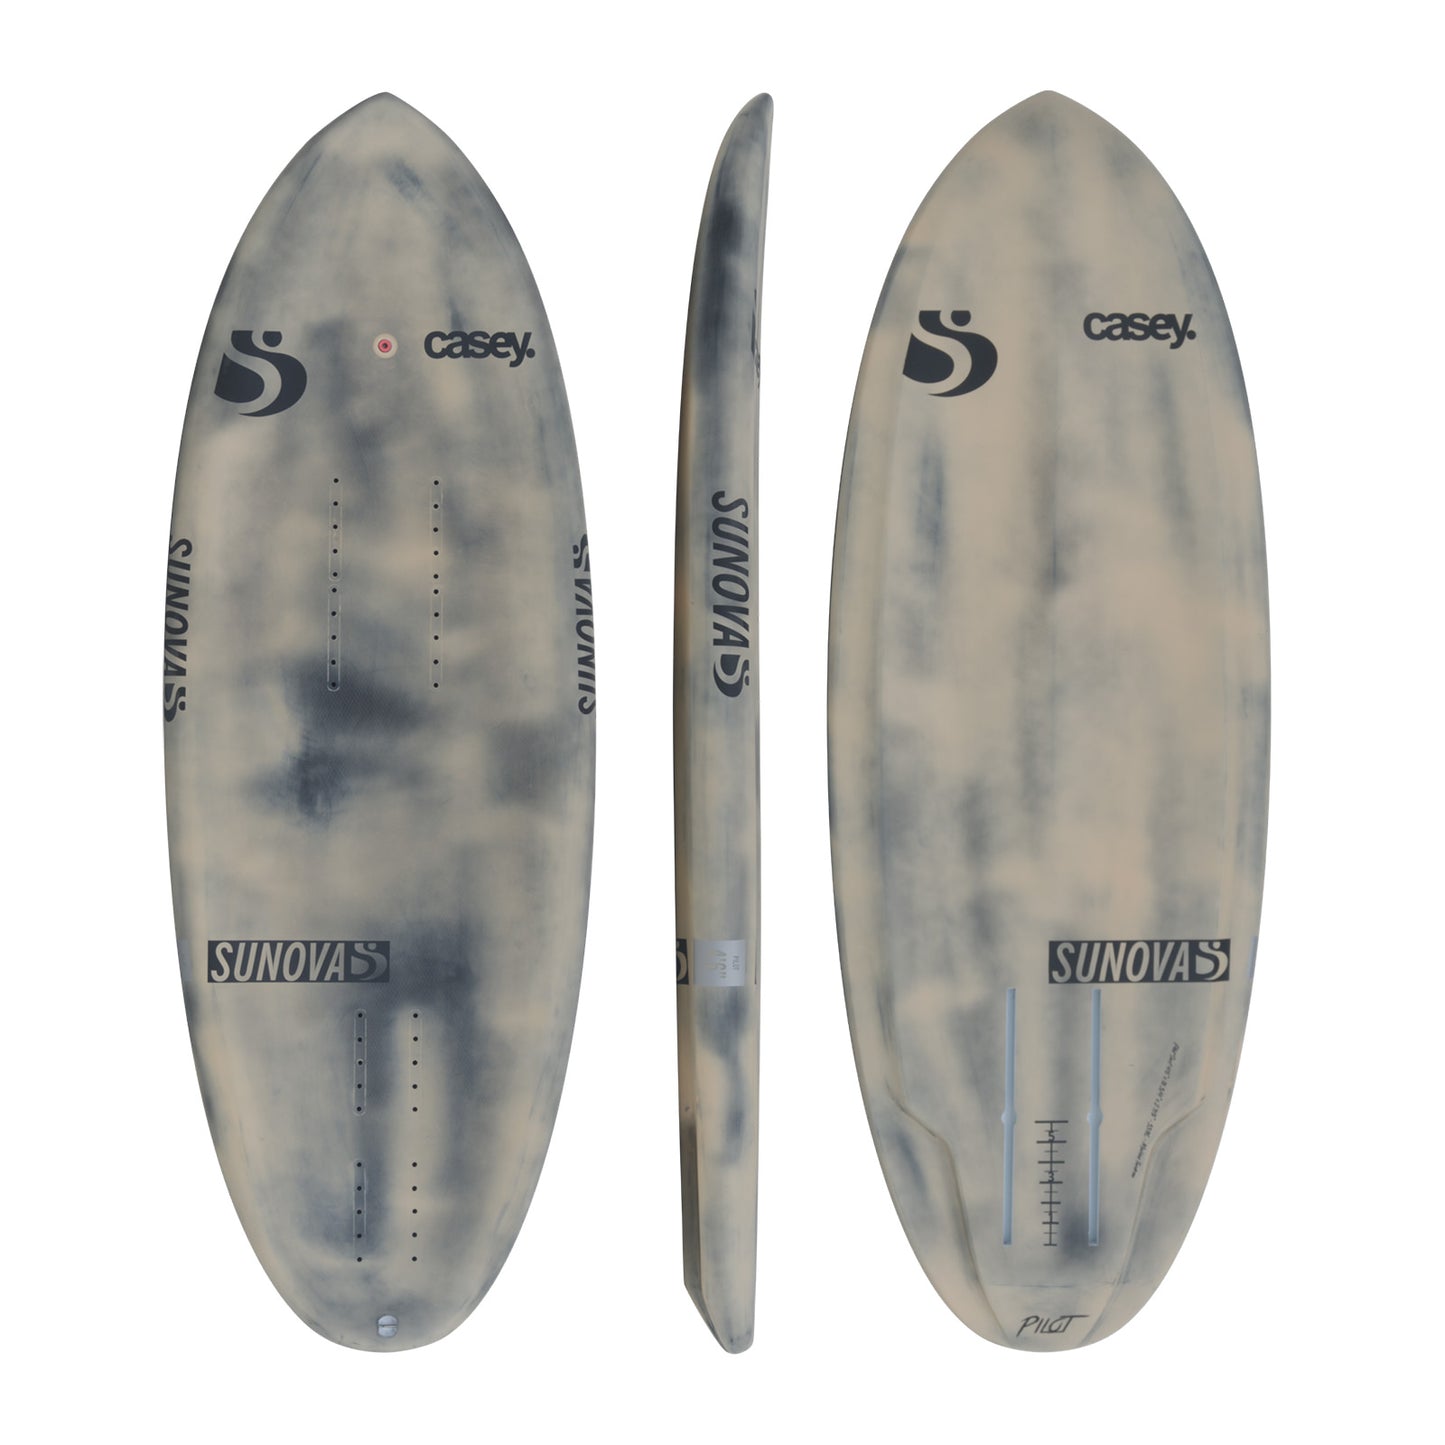 Drei Ansichten des Sunova Casey Pilot Surf Pronefoil Board in der CarbonTec Bauweise.